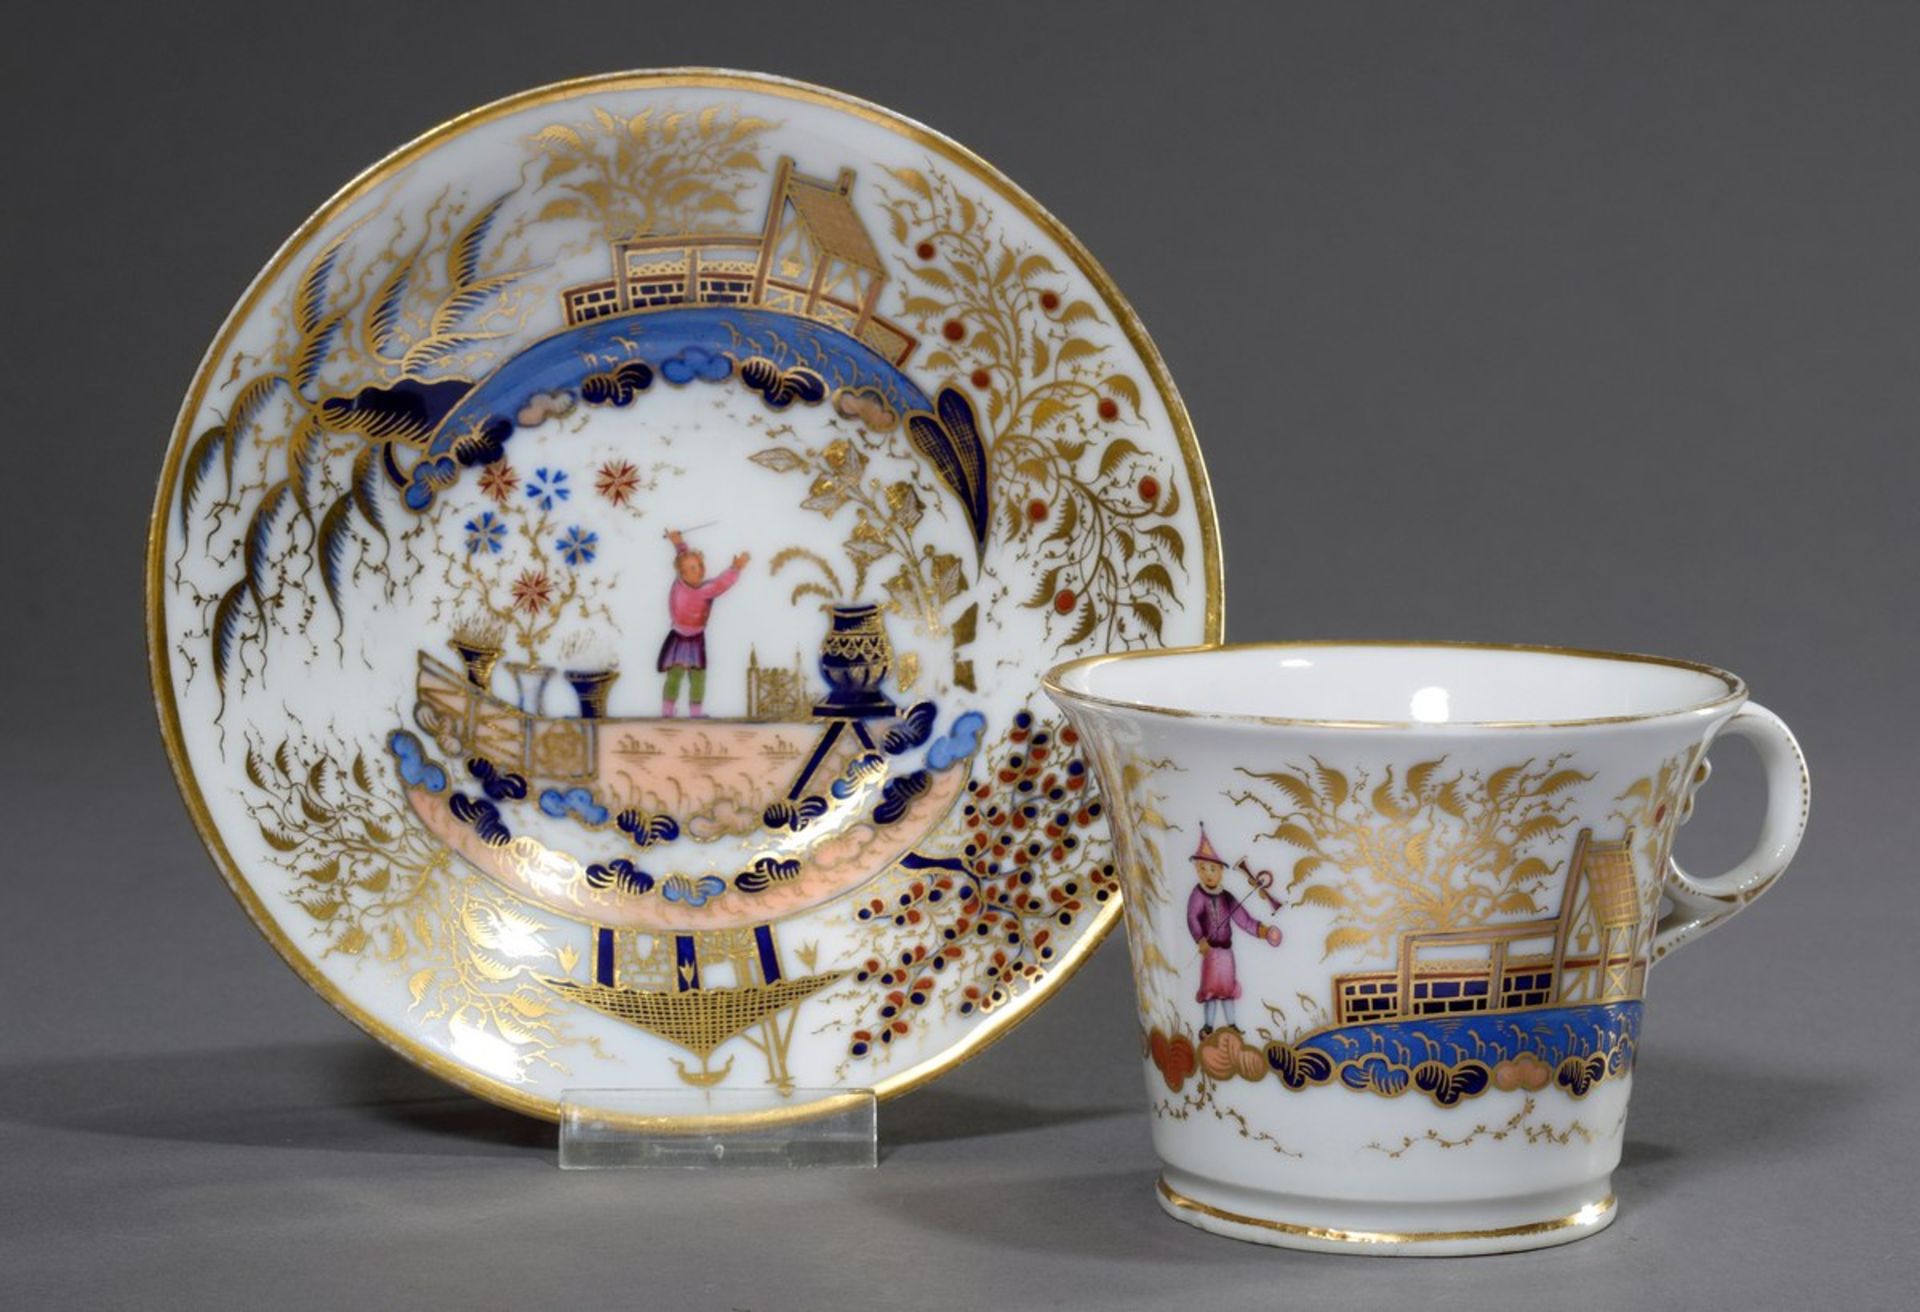 Englische Porzellan Tasse im chinesischen Stil "Landschaft mit Figuren", farbig bemalt, mit